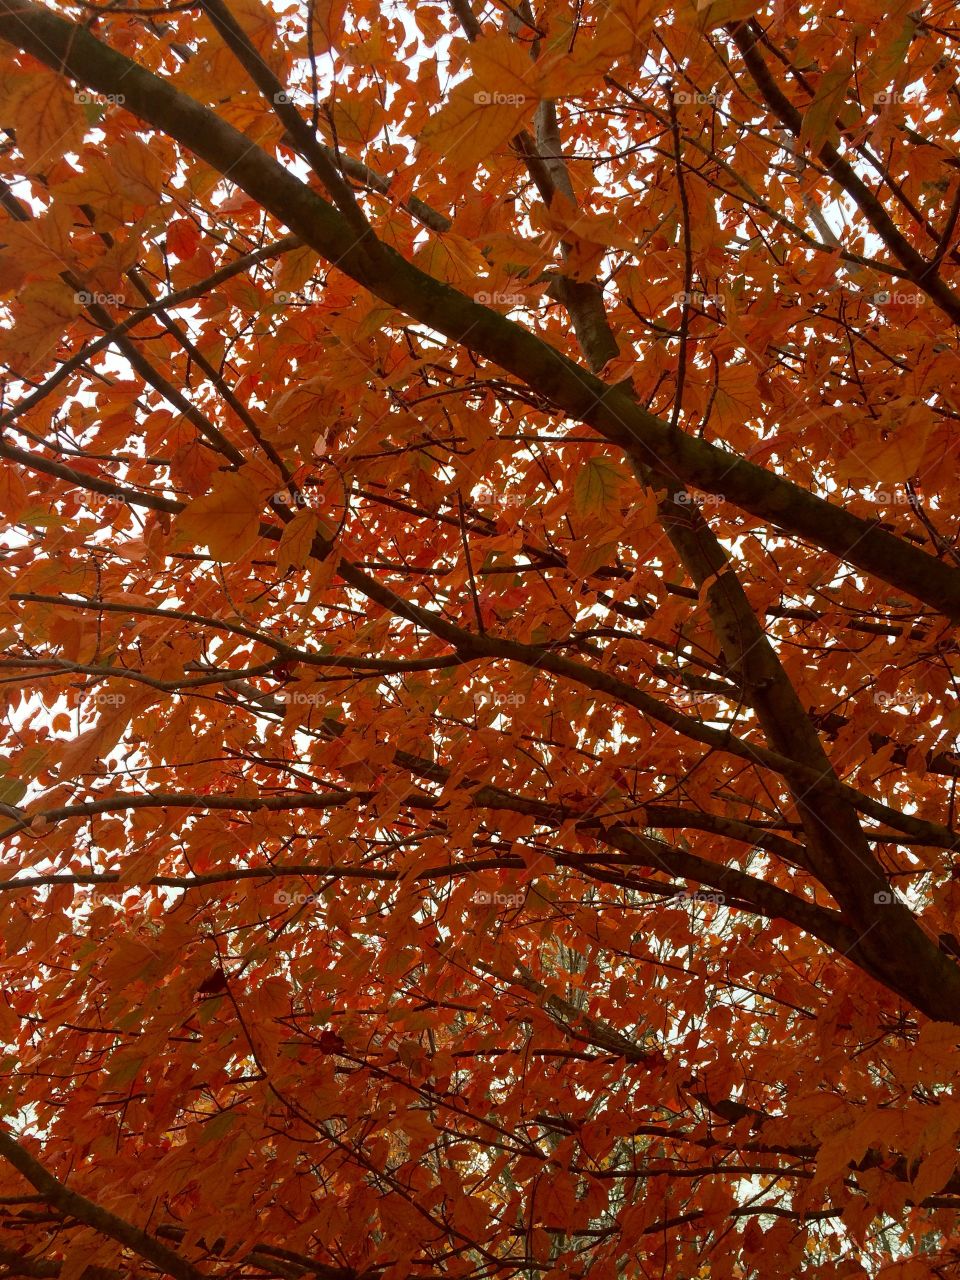 Orange leaves. 🍂 still on the tree
